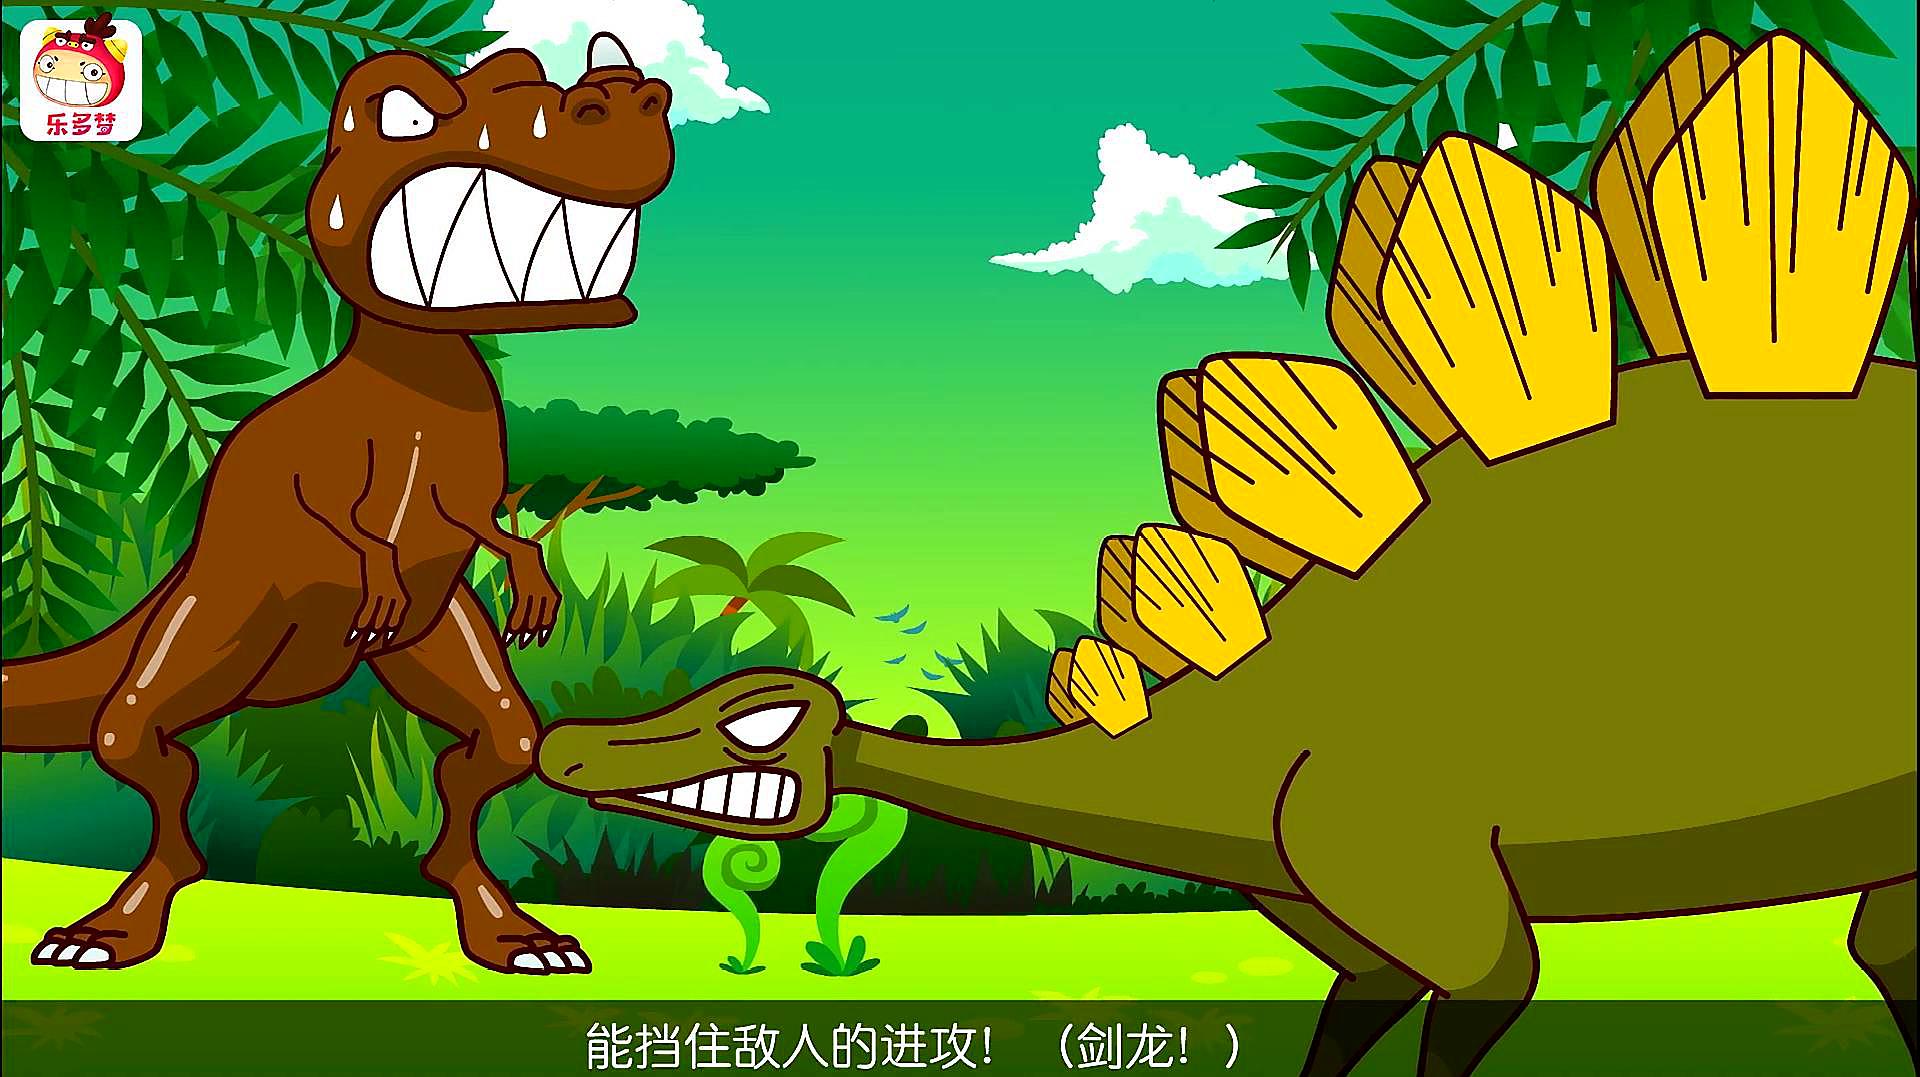 不一样的早教视频:恐龙儿歌动画片